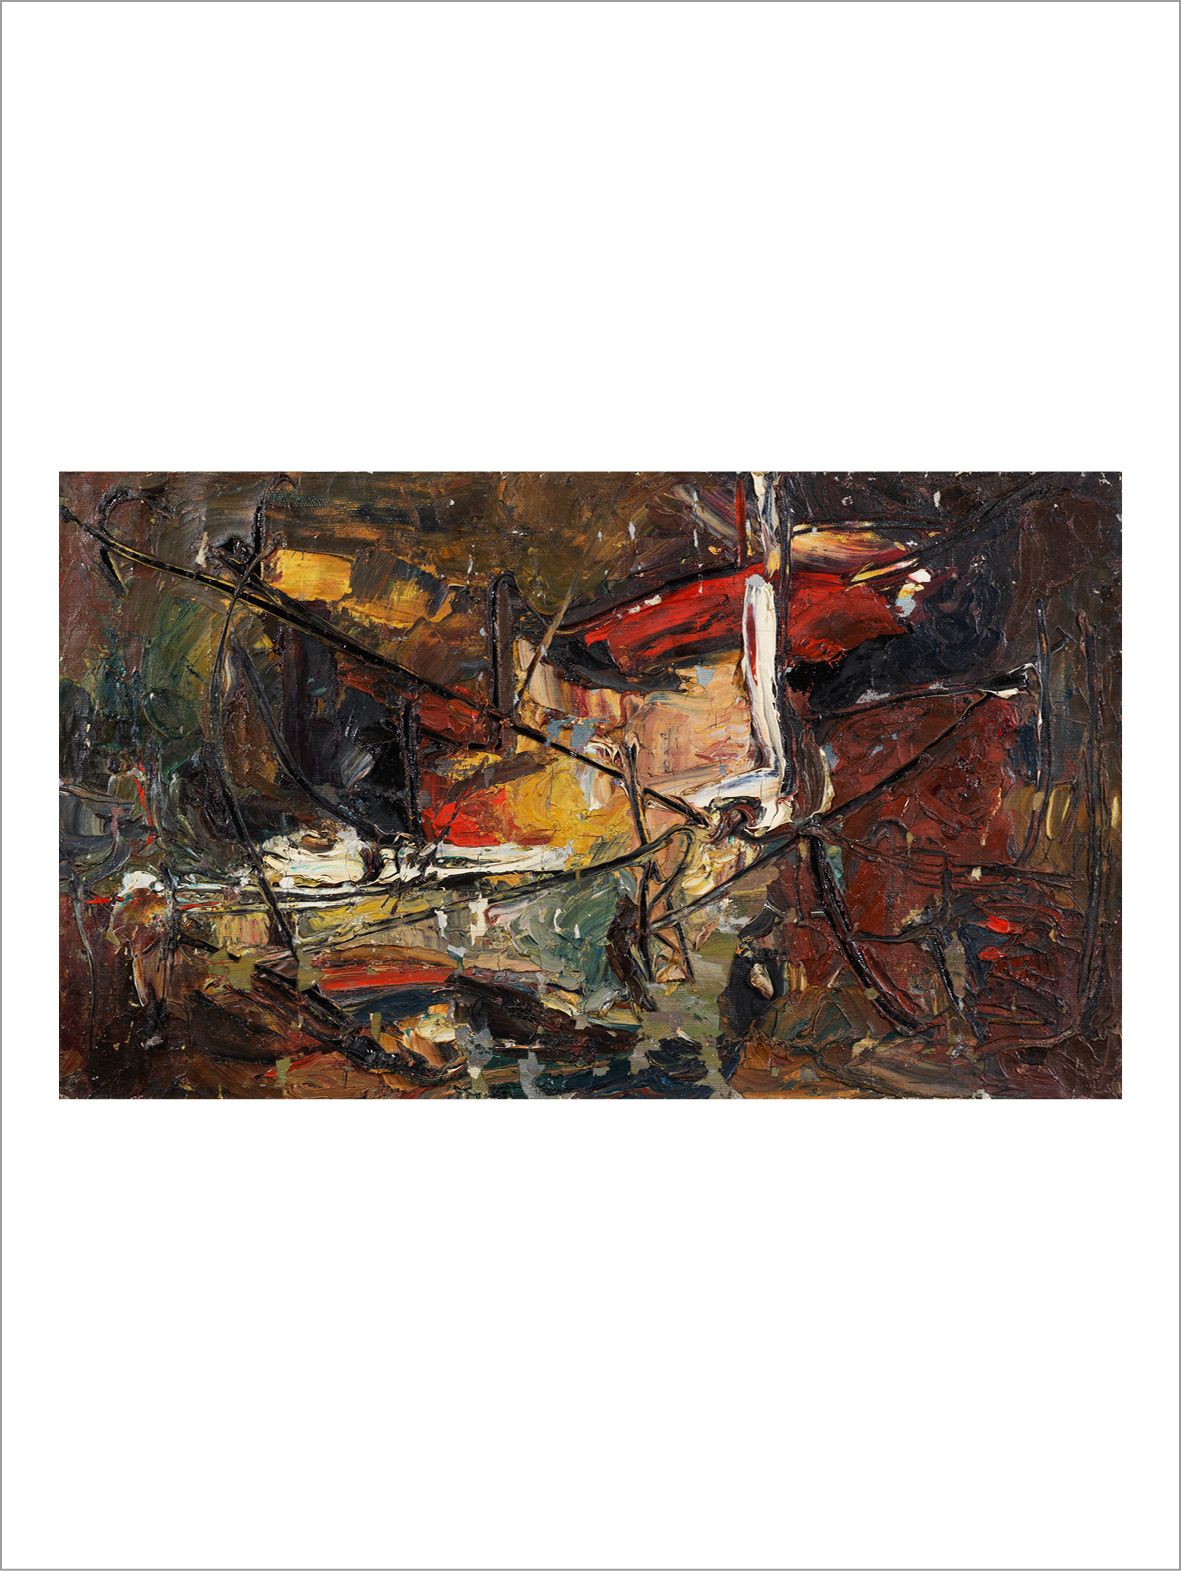 VLADIMIR NEMUKHIN (1925-2016) Composition sur fond marron, 1959
Óleo sobre lienz&hellip;